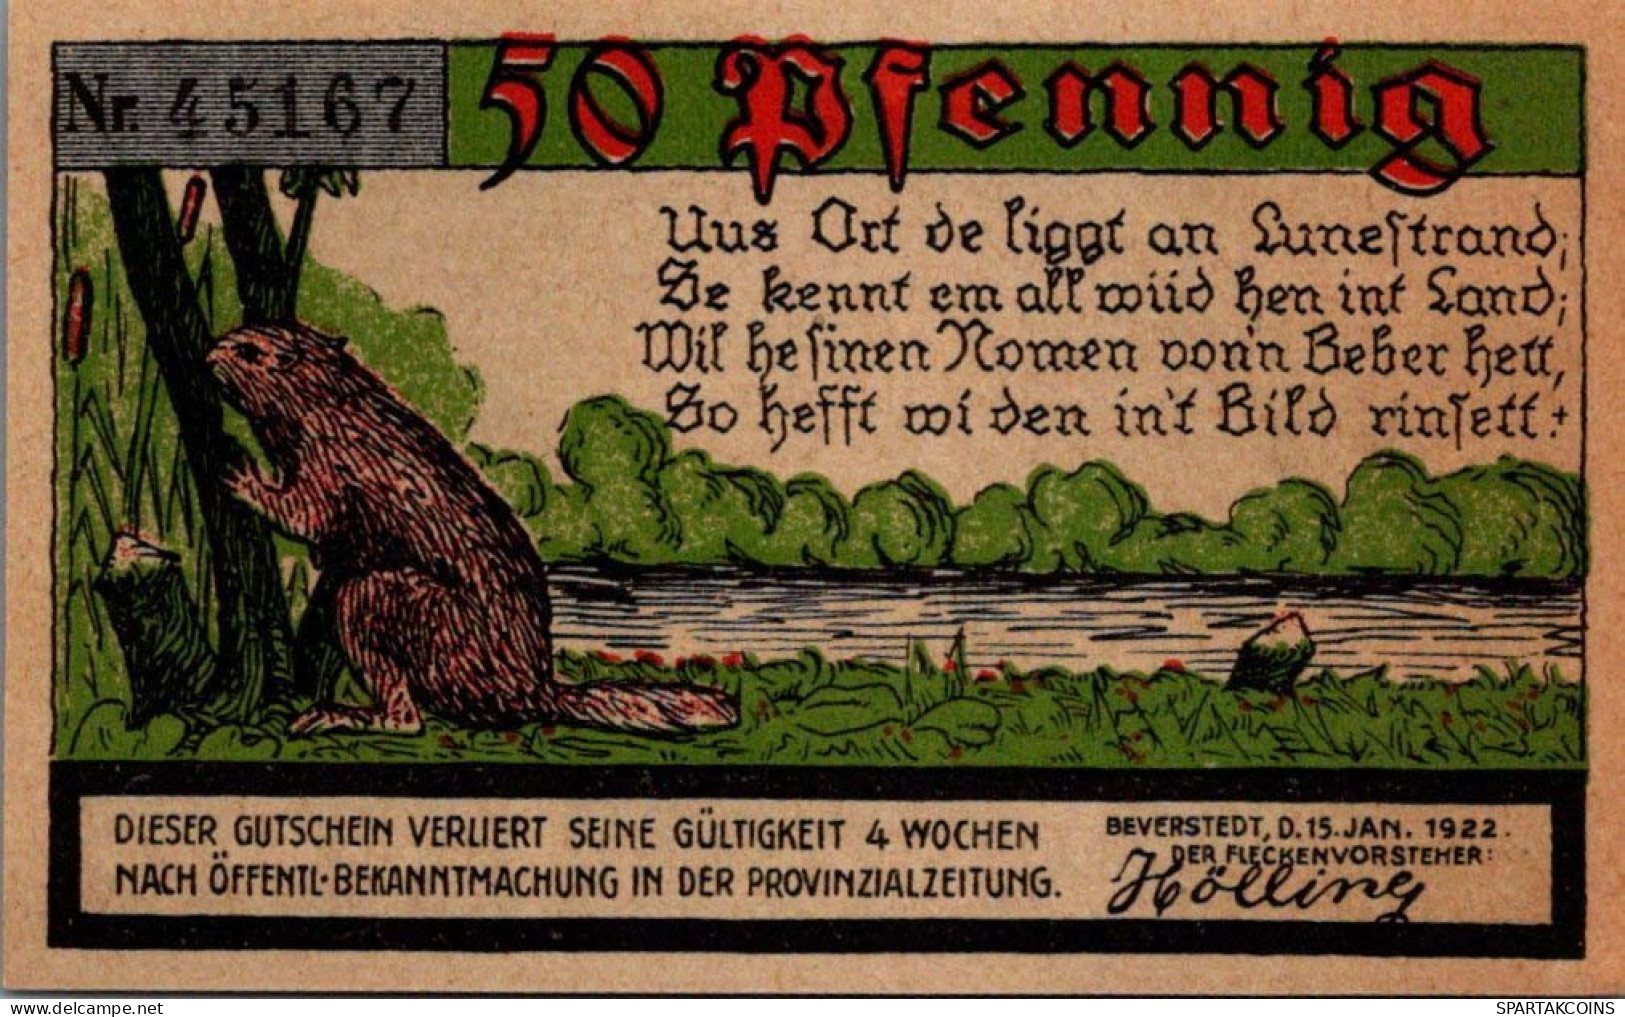 50 PFENNIG 1922 Stadt Beverstadt Saxony UNC DEUTSCHLAND Notgeld Banknote #PH963 - [11] Local Banknote Issues